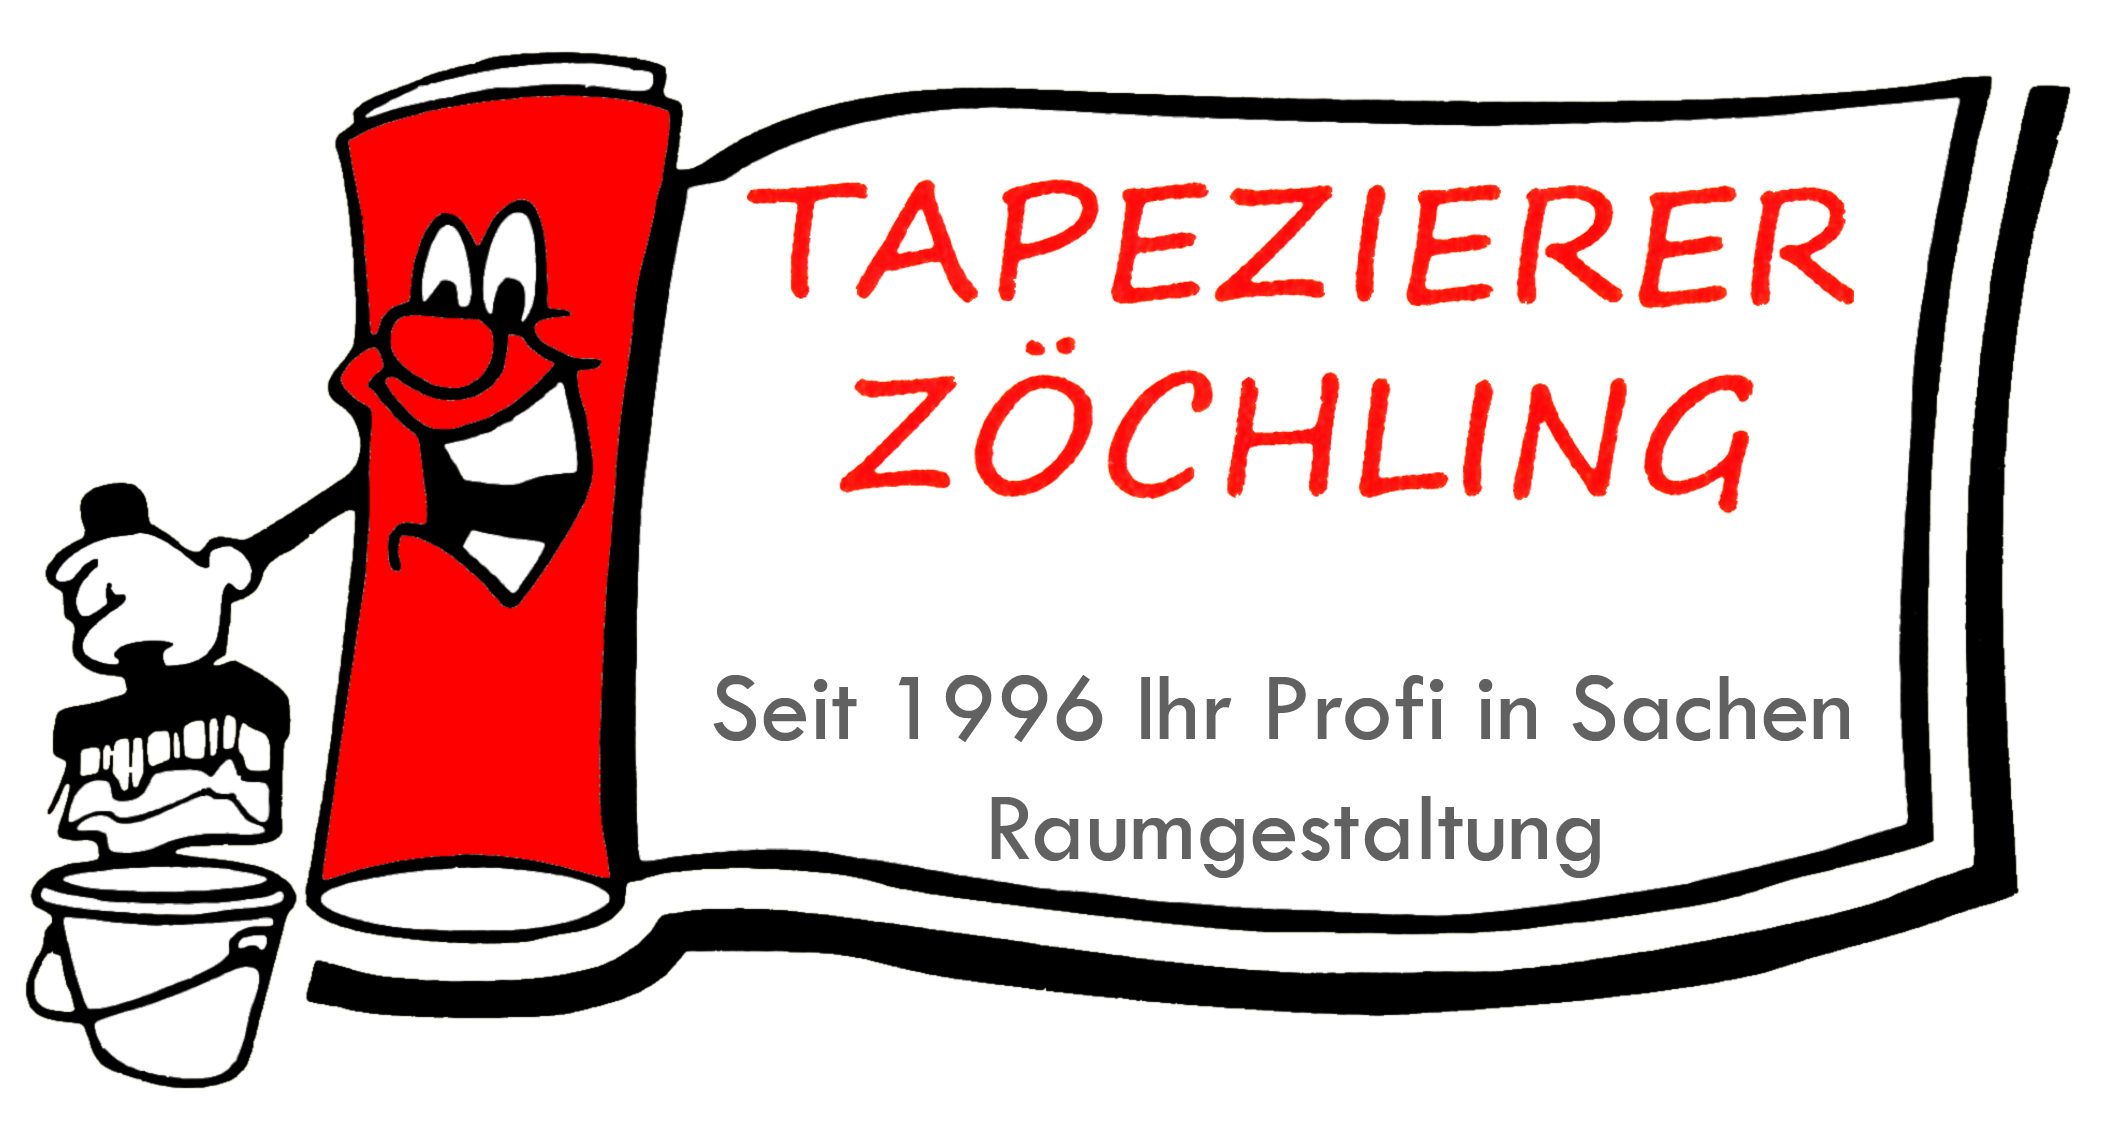 Tapezierer Zöchling Lilienfeld - Seit 1996 Ihr Profi in Sachen Raumdesign!